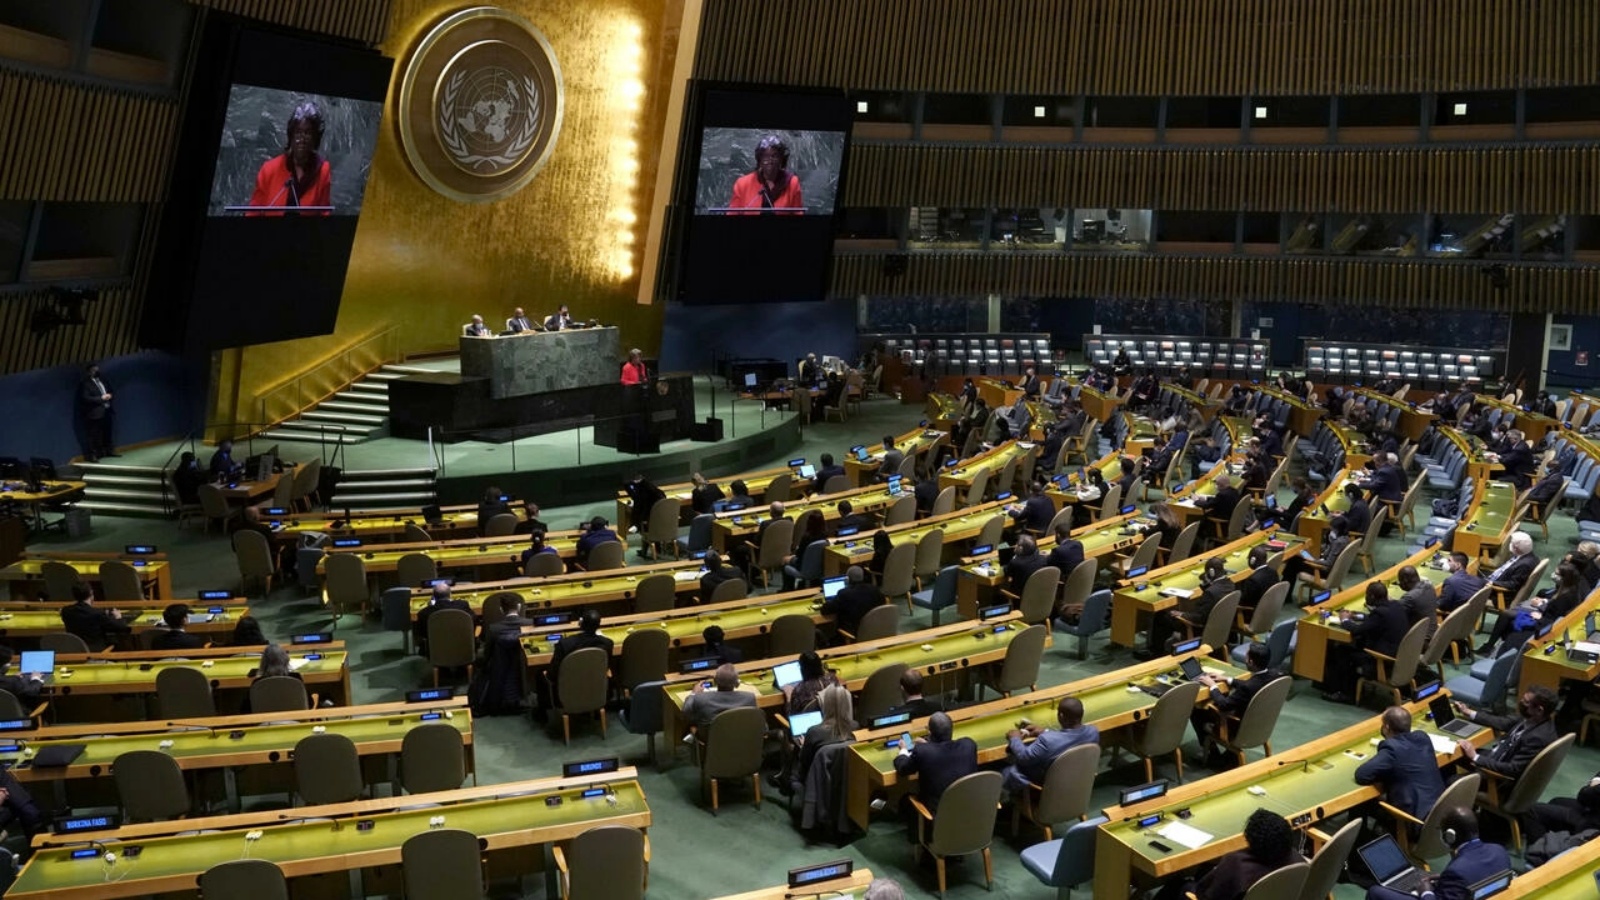 السفيرة الأميركية لدى الأمم المتحدة ليندا توماس-غرينفيلد متحدثة أمام الجمعية العامة للأمم المتحدة في نيويورك في 23 فبراير 2022 أثناء اجتماع مخصص لأوكرانيا